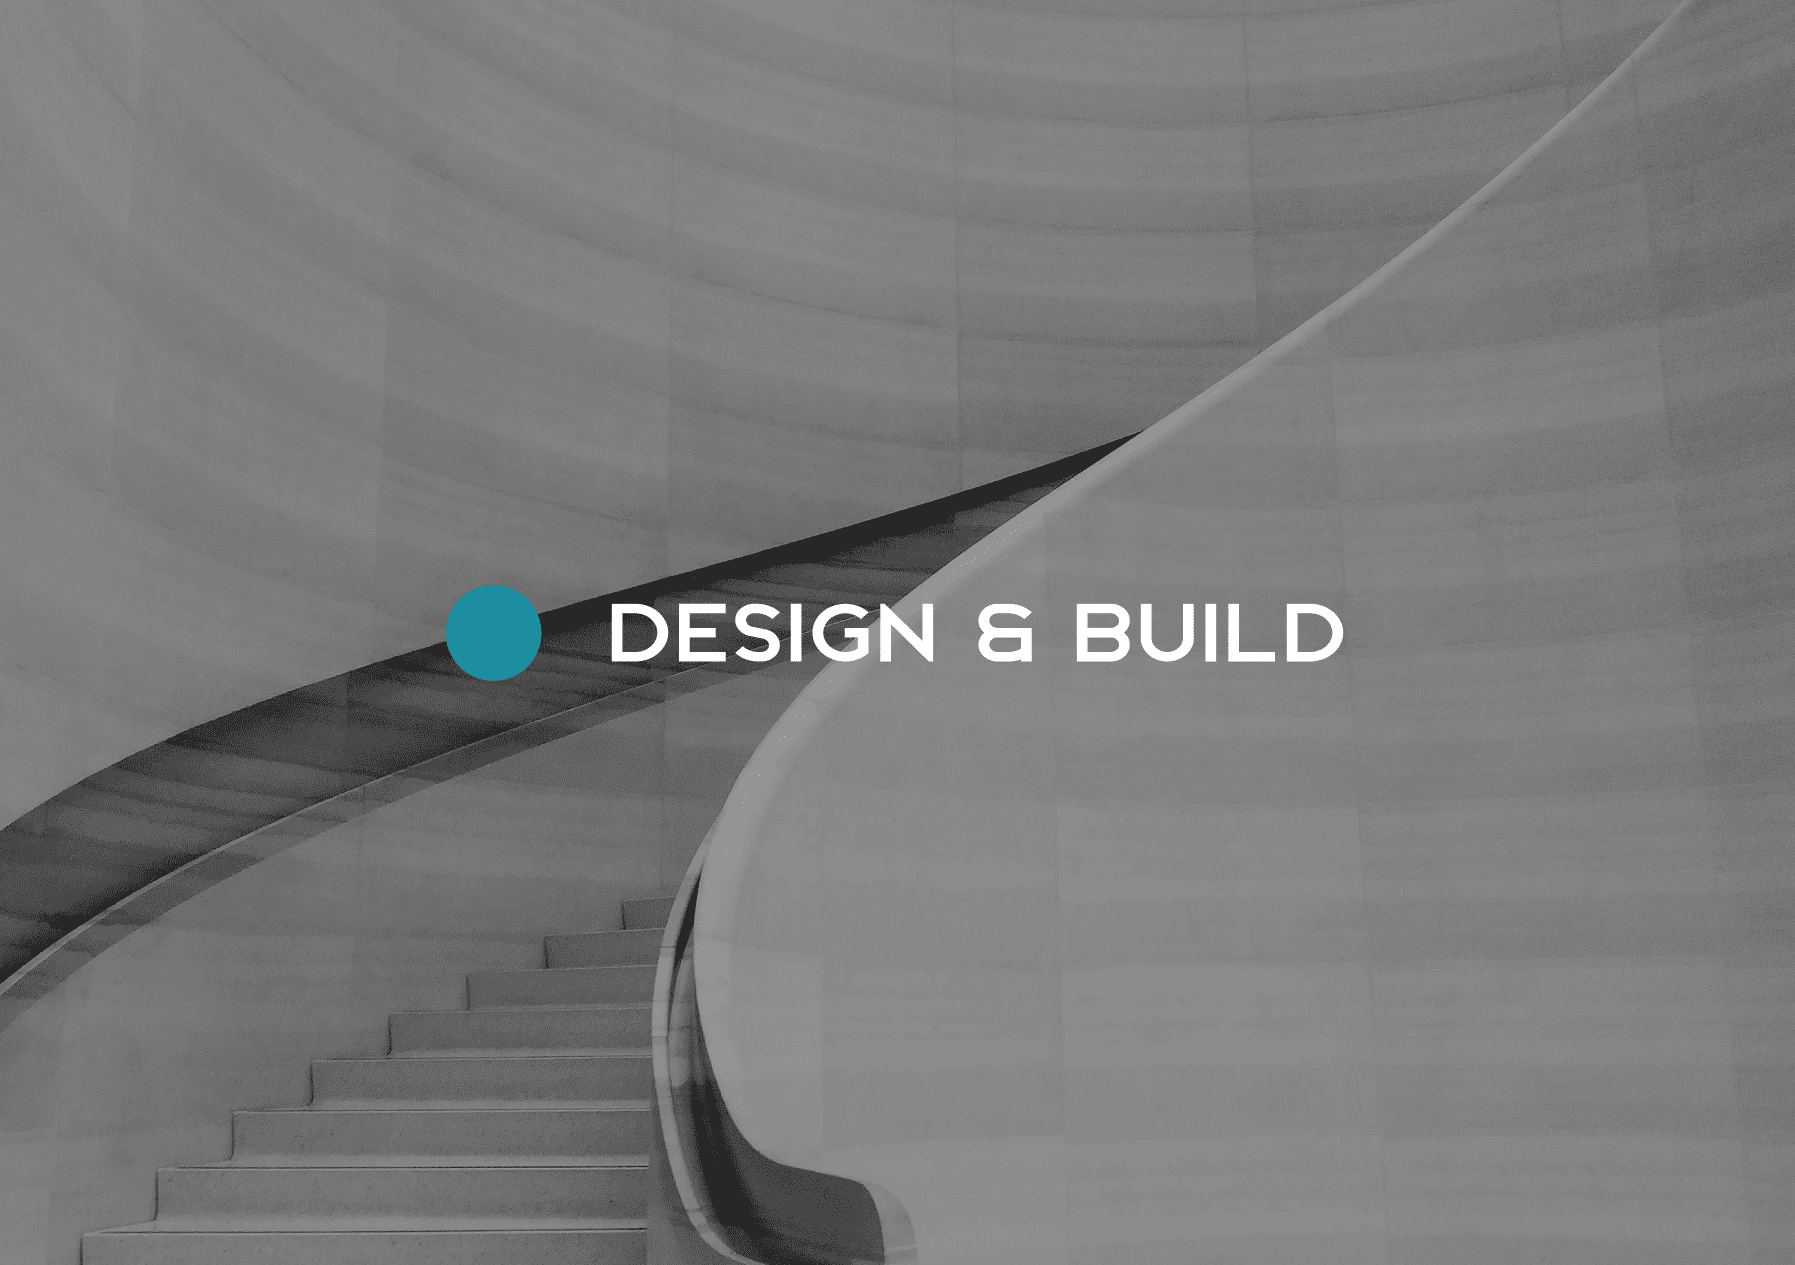 Design & Build